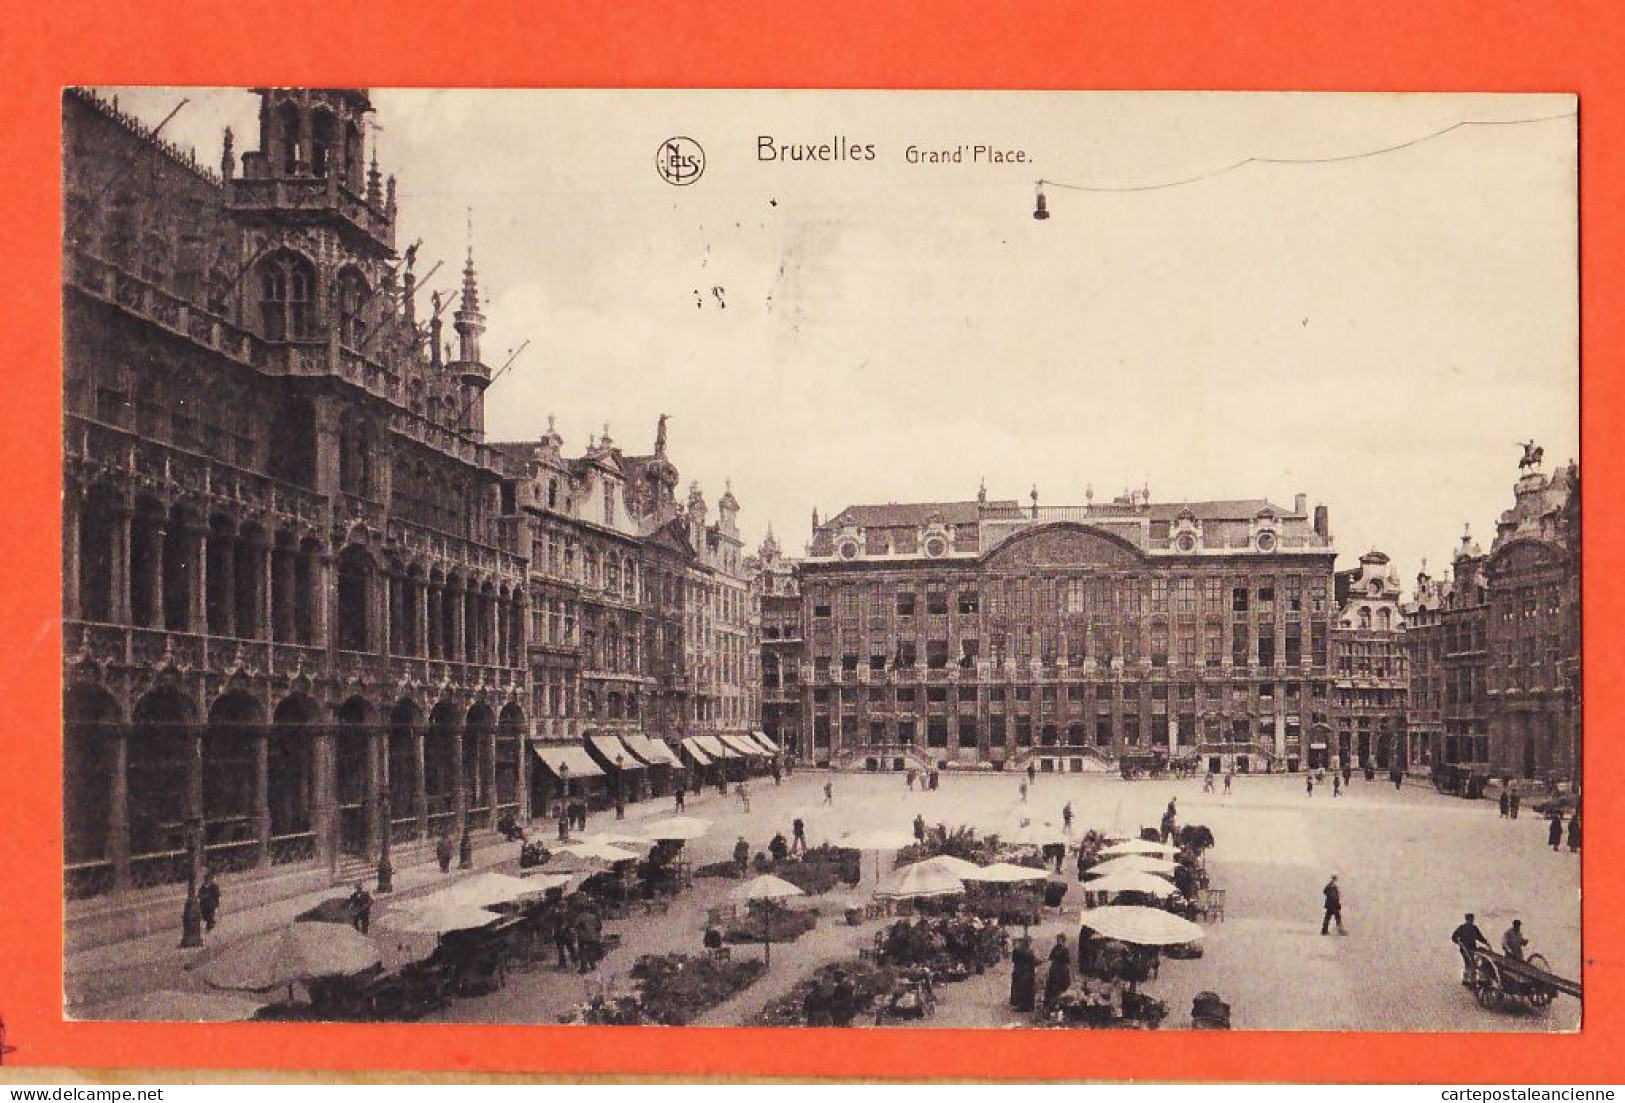 05115 ● BRUXELLES BRUSSEL Jour De Marché Grand' Place 1920s à Ph J STOK Den Haag  THILL Série 1 N° 29 Belgique Belgie - Monuments